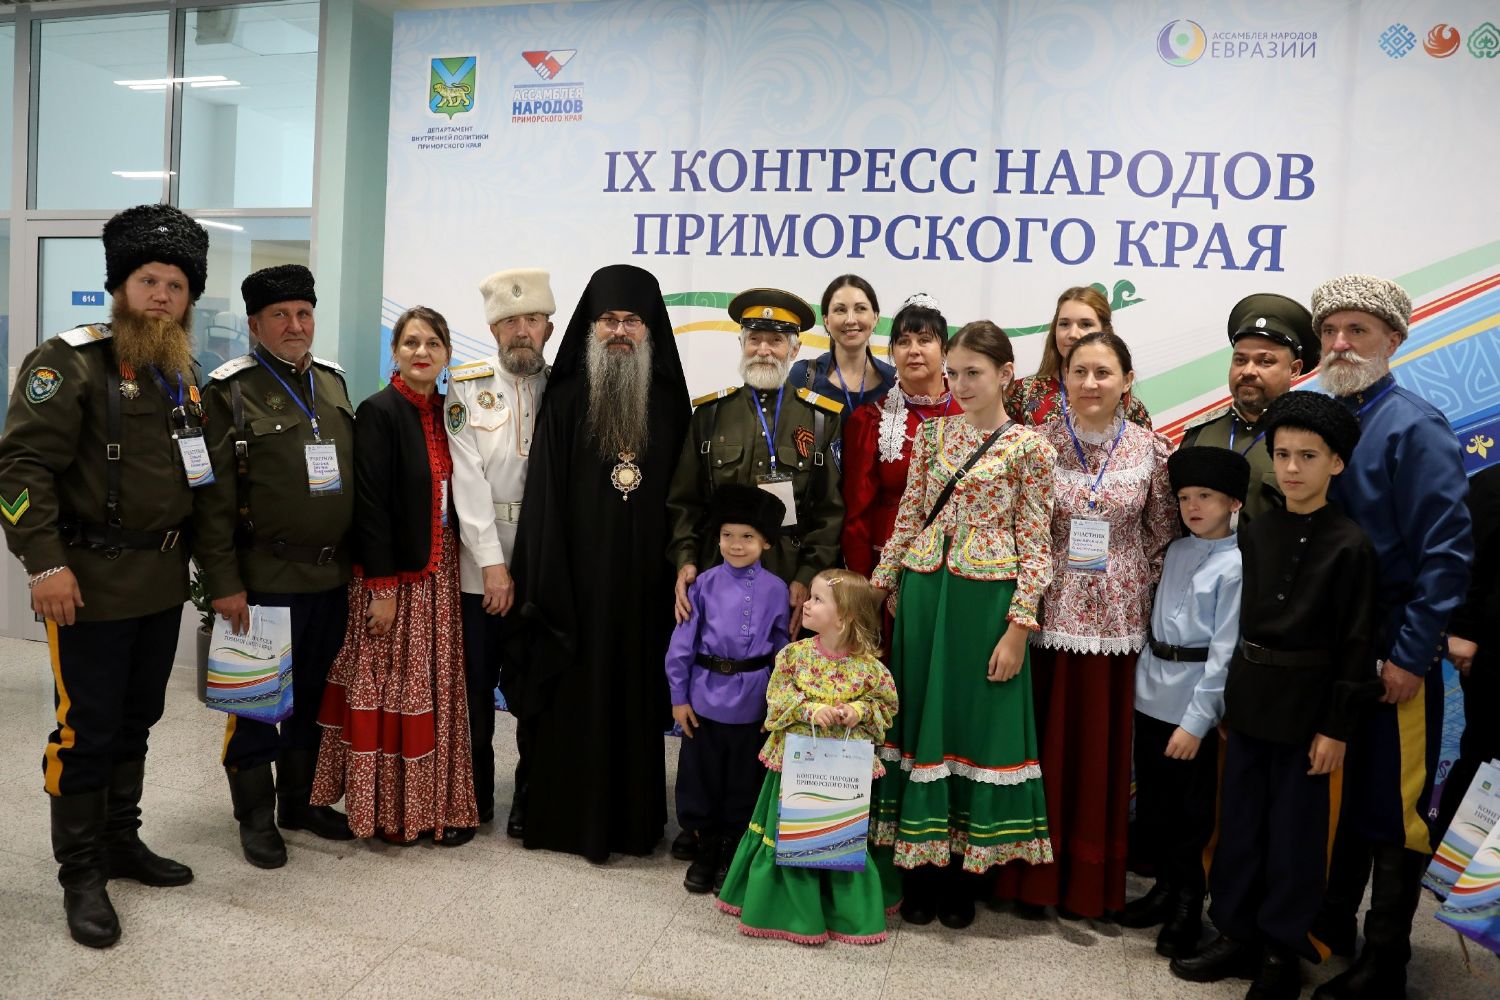 Епископ Иннокентий принял участие в торжественном открытии IX Конгресса народов Приморского края